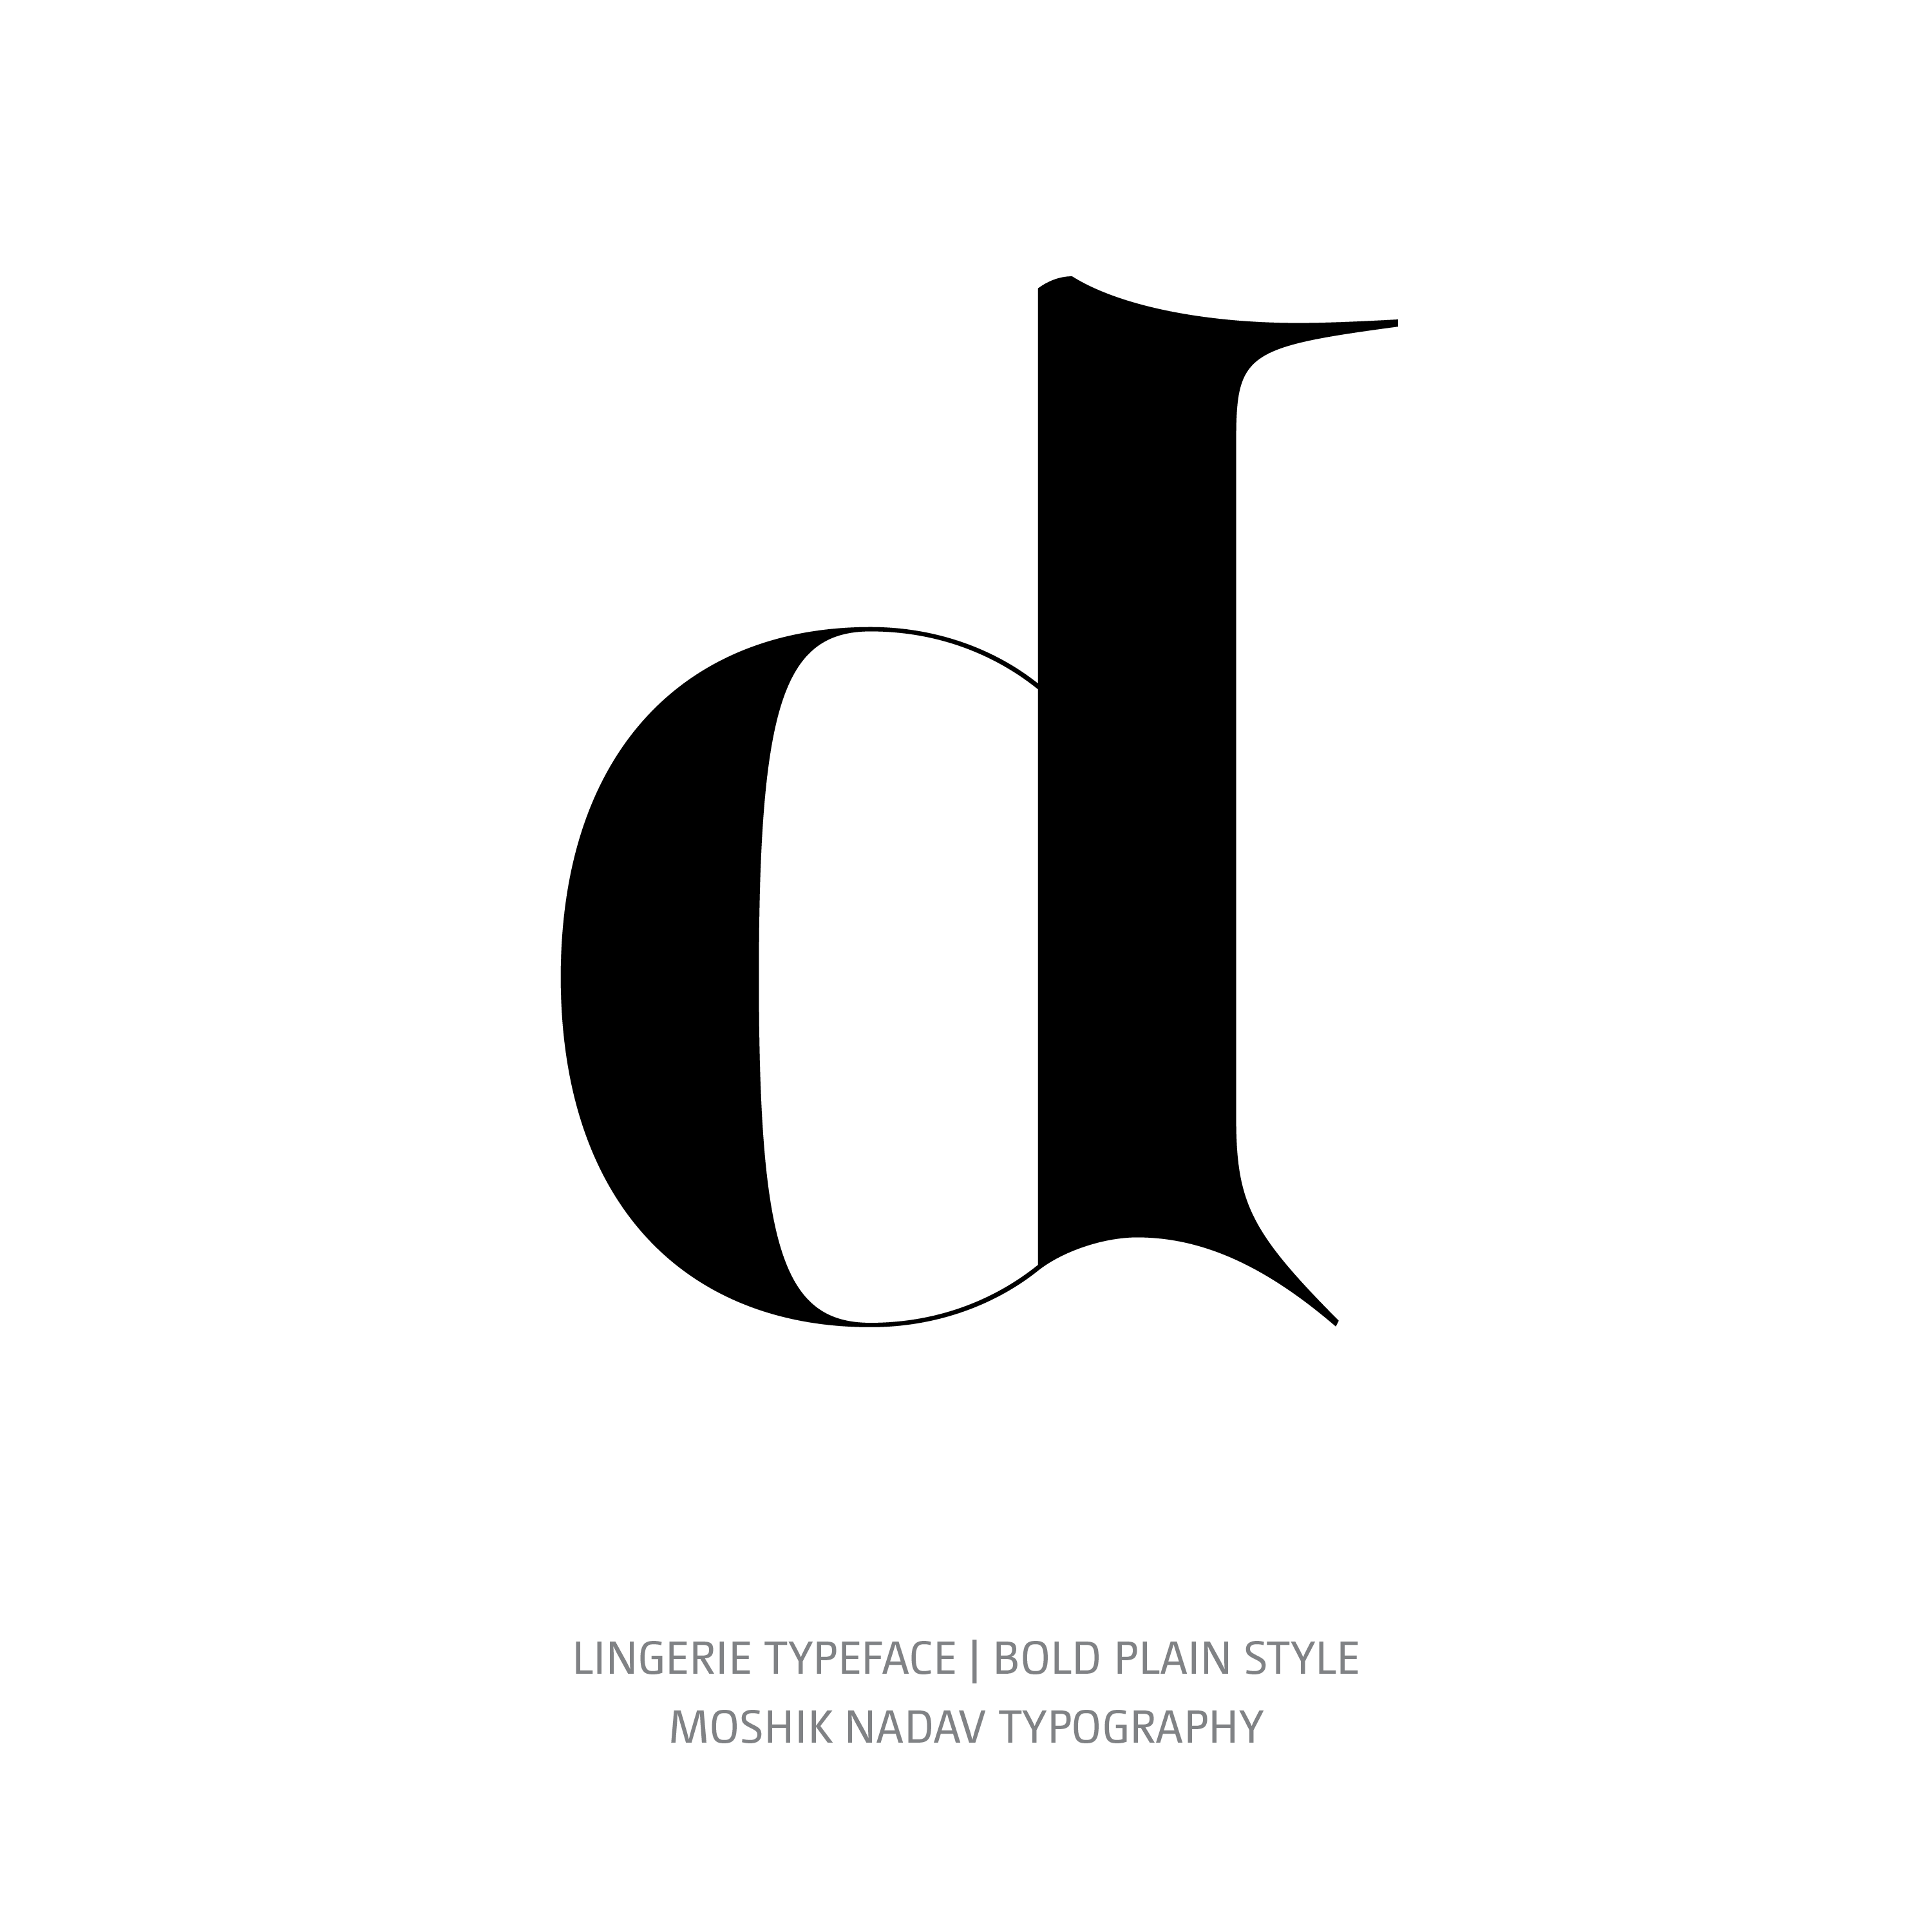 Lingerie Typeface Bold Plain d